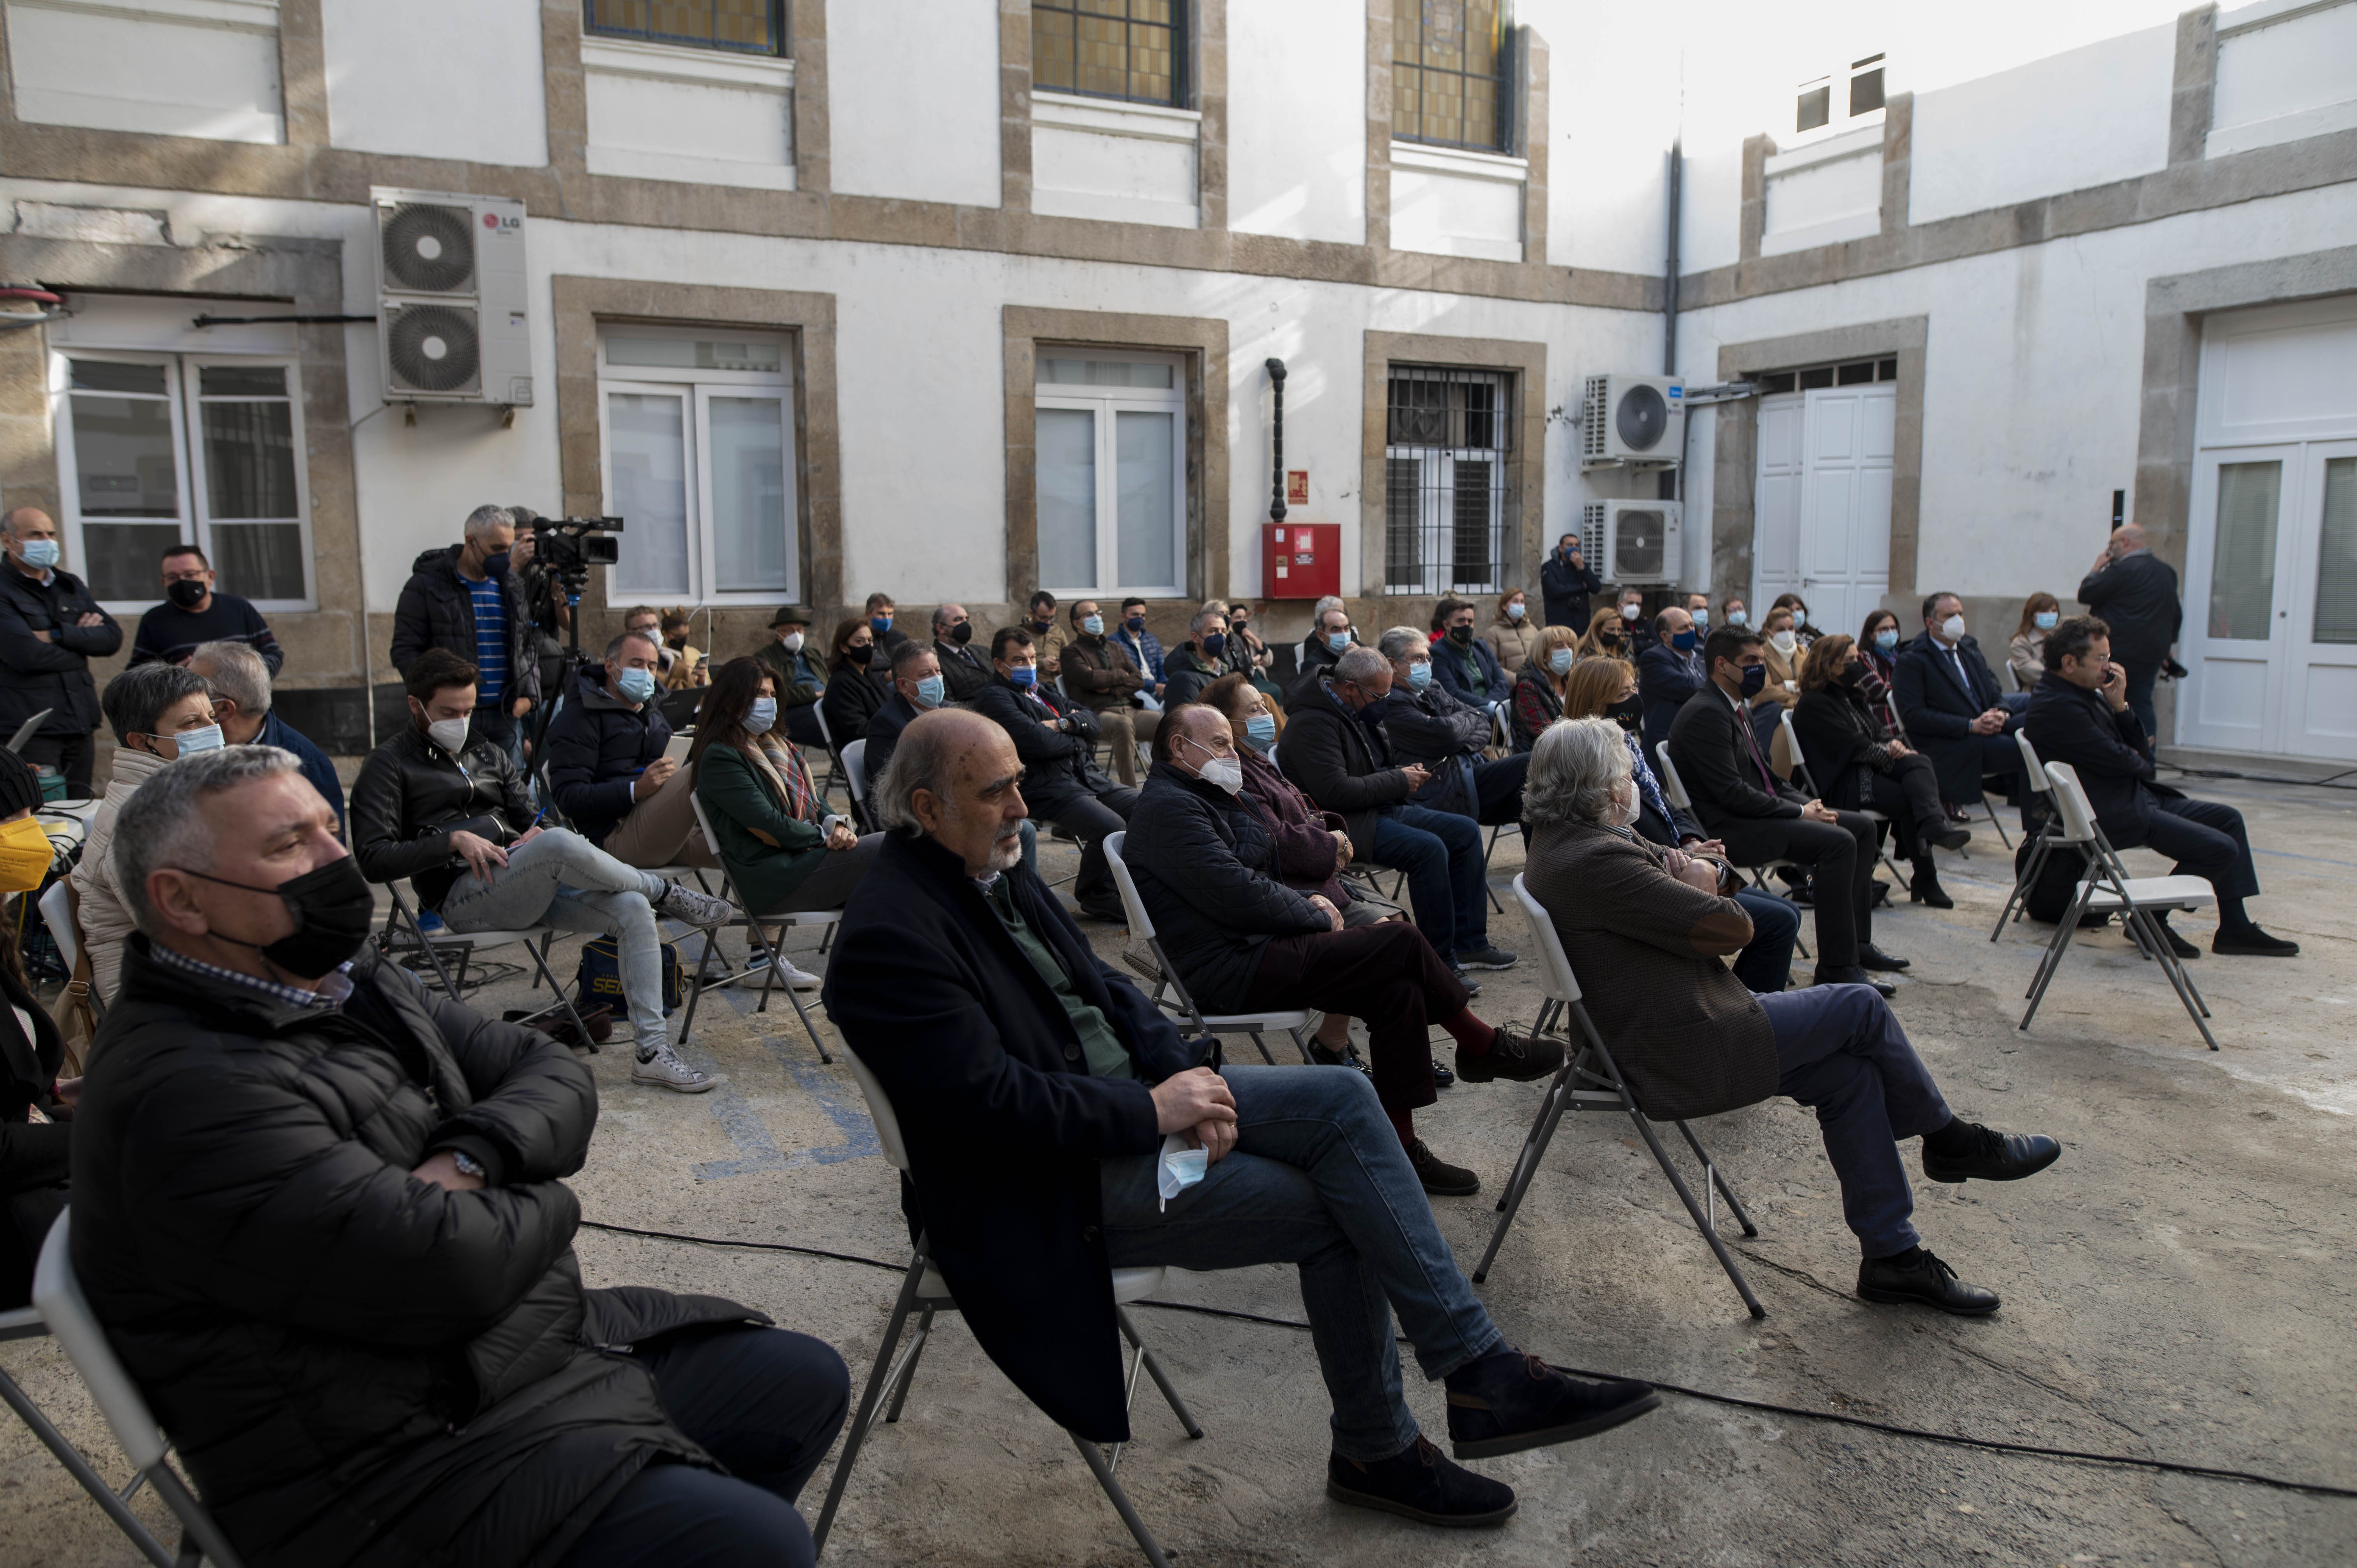 Ourense 10/11/21
Presentación balneario Auria en la diputación

Fotos Martiño Pinal